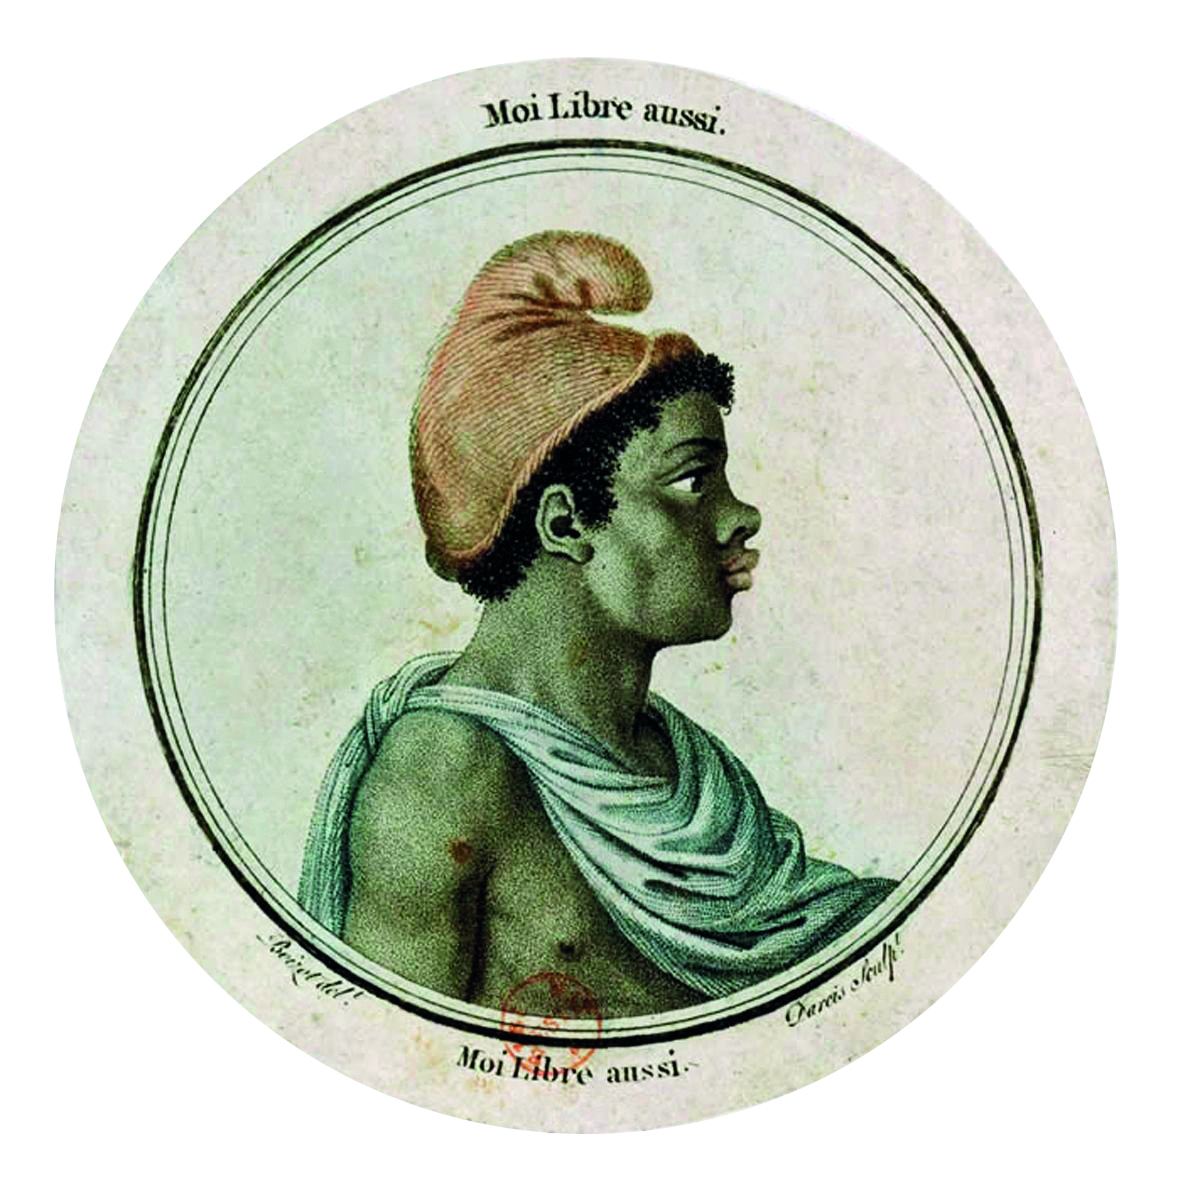 Gravura. Sobre um fundo branco circular,  retrato de um homem visto de perfil. Ele é negro, tem cabelos crespos, curtos, escuros. Usa um barrete vermelho sobre sua cabeça e um tecido azul sobre seu peito nu.